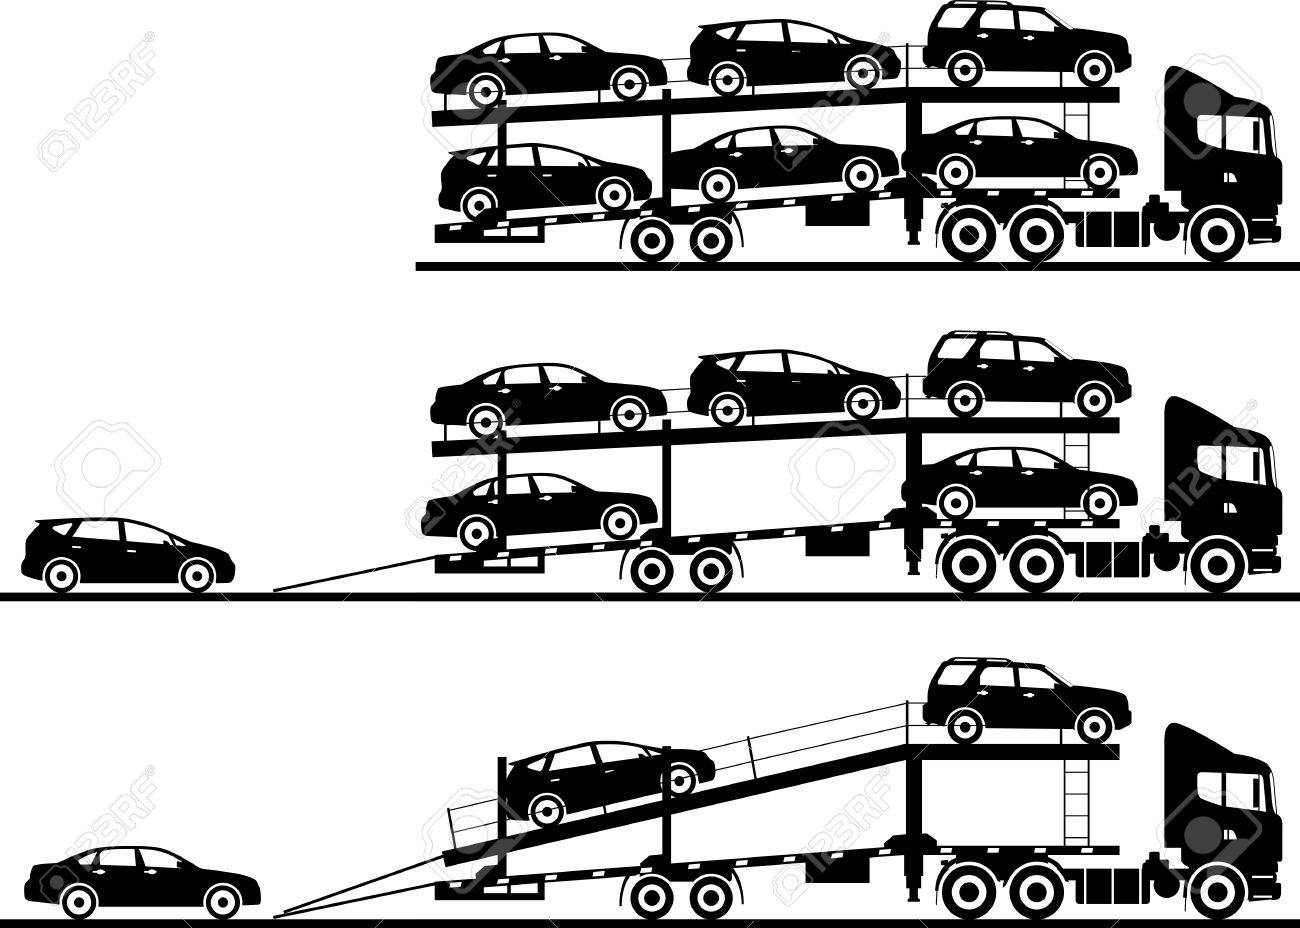 Схема автомобилей на автовозе